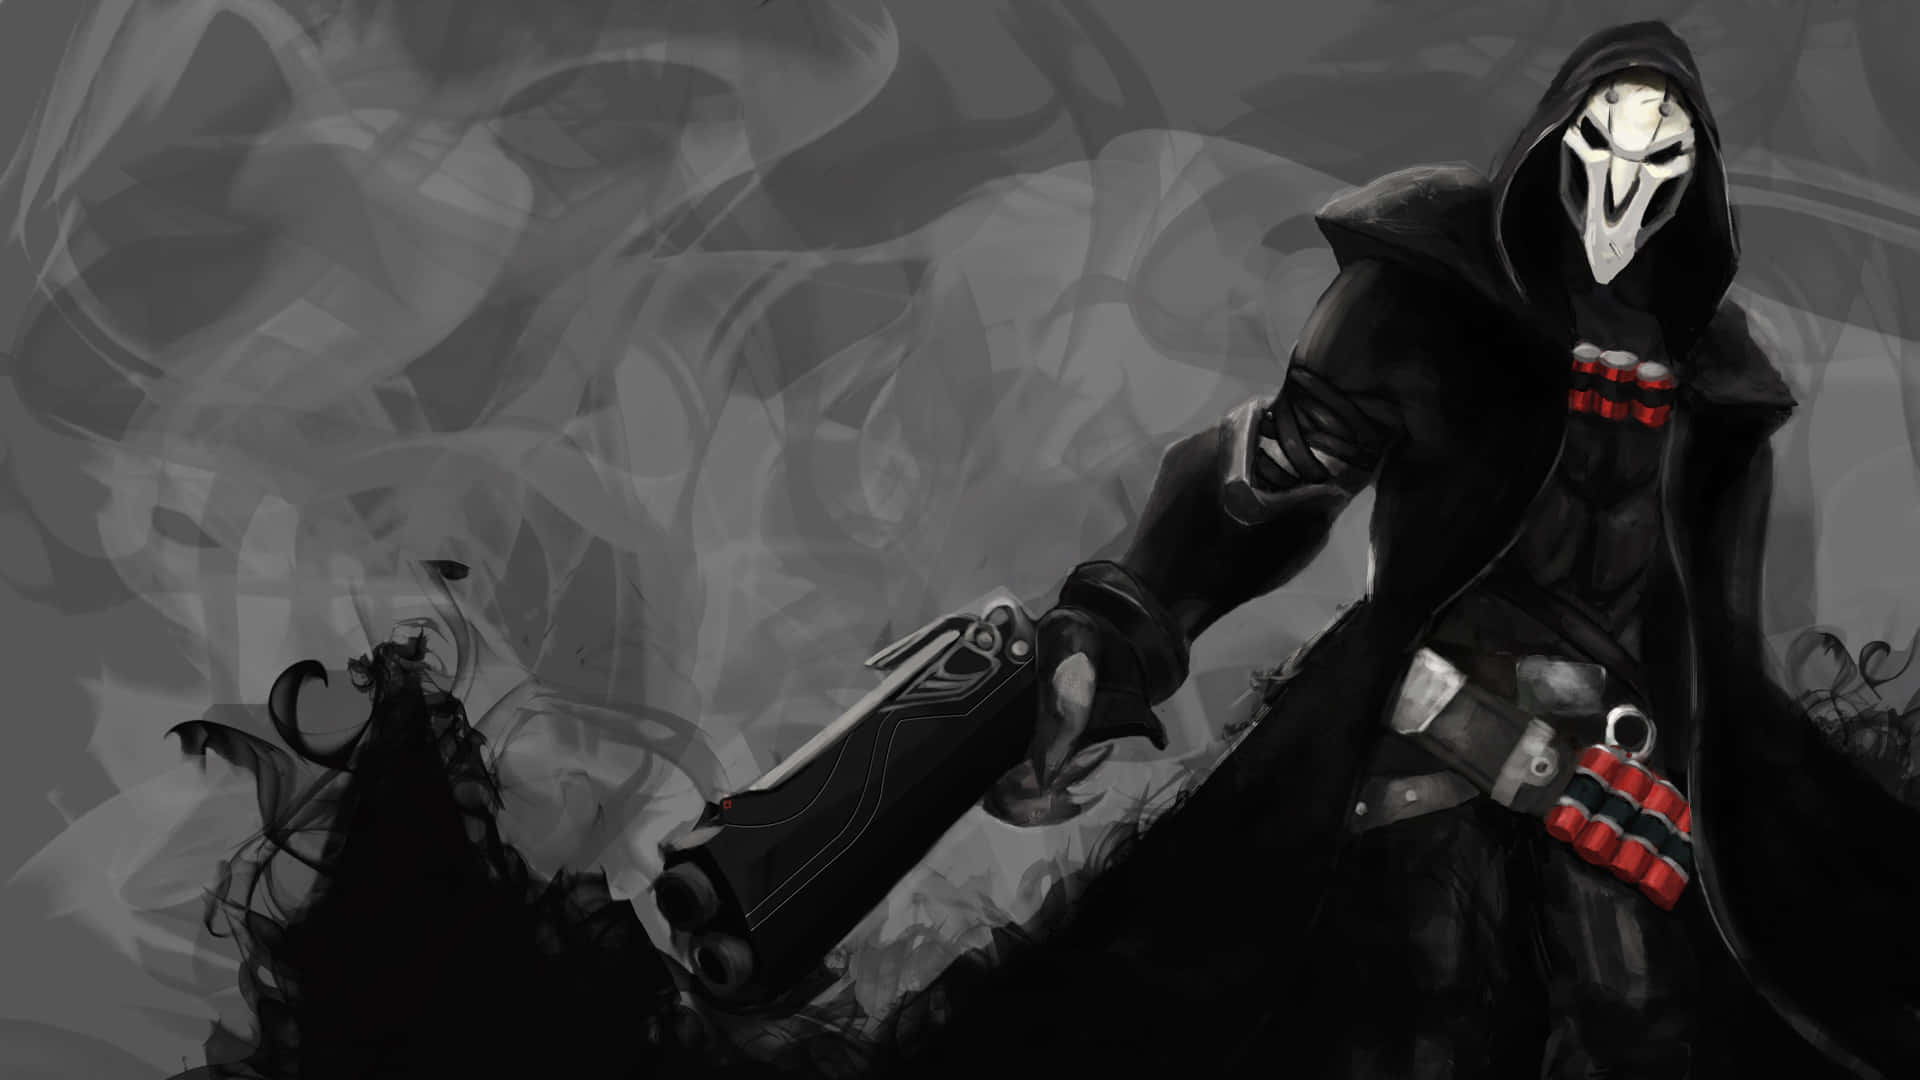 Overwatch Reaper: The Troublemaker Wallpaper